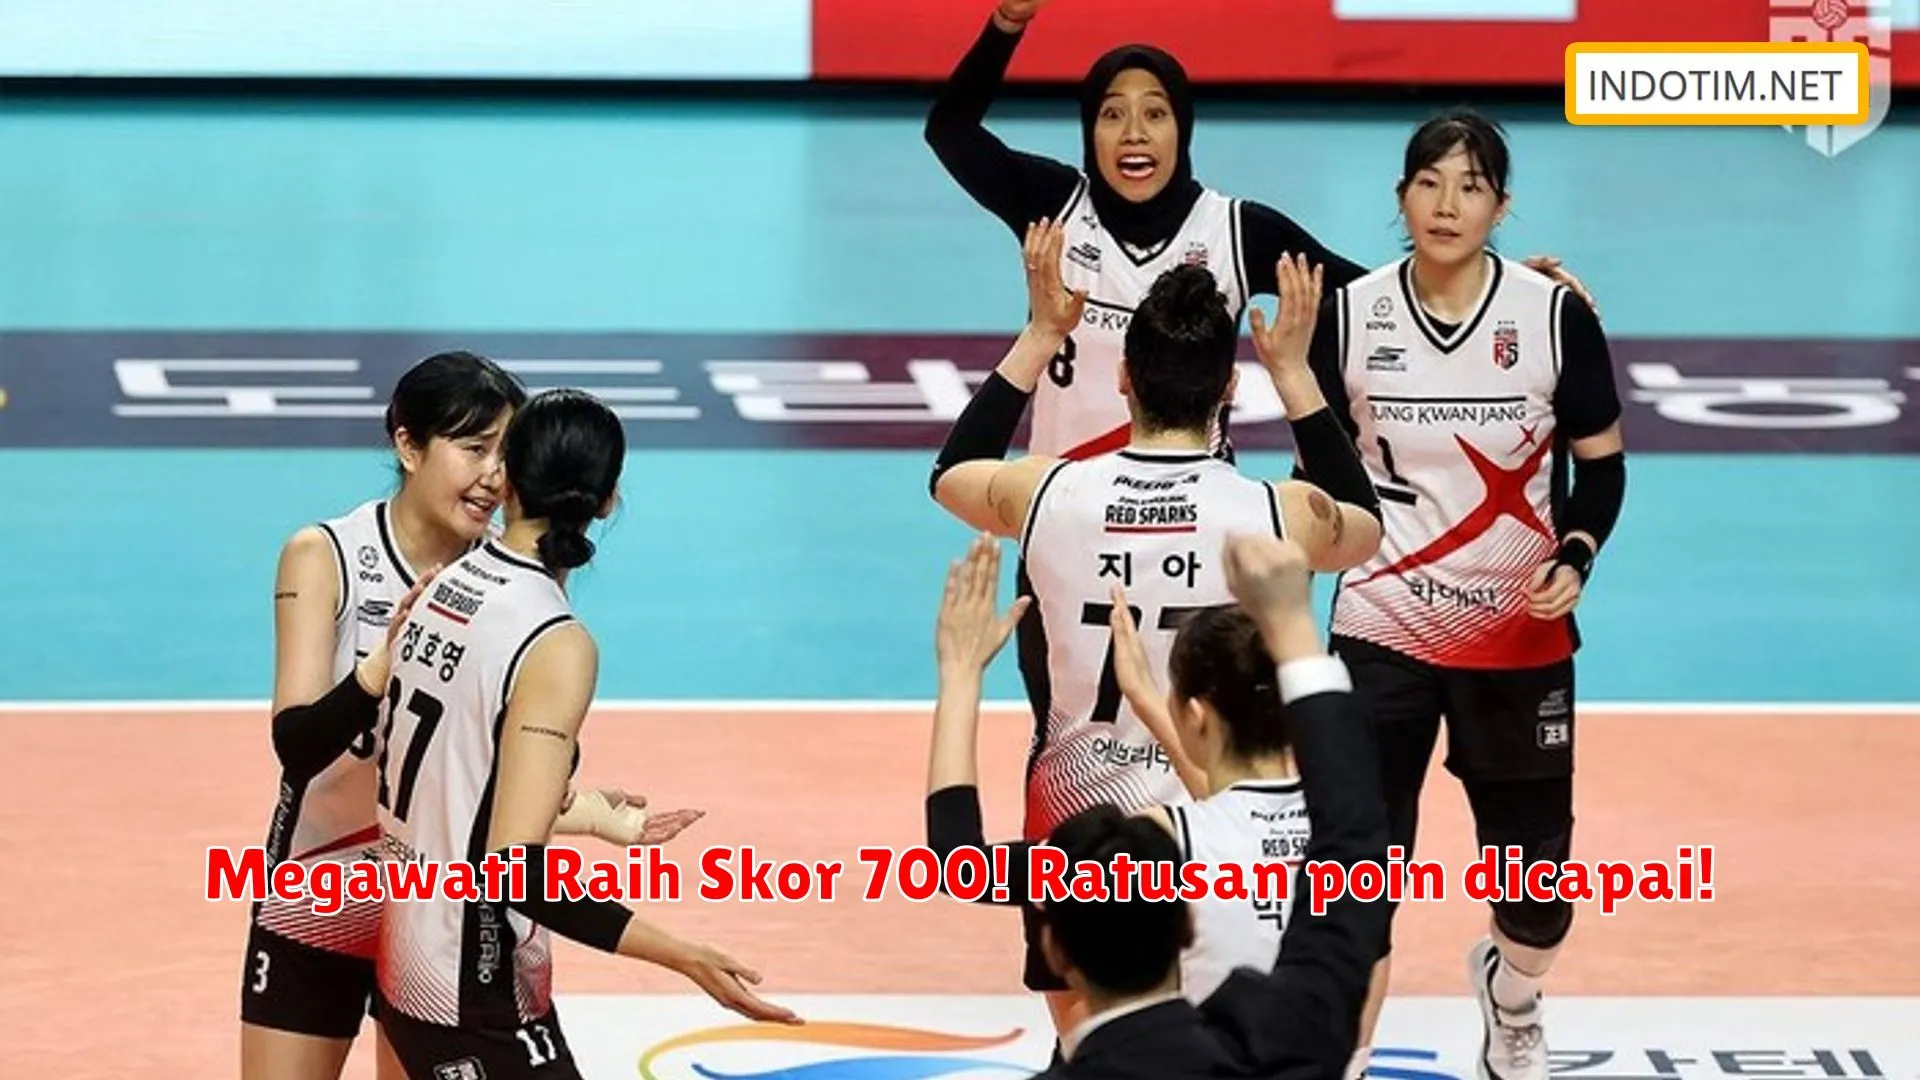 Megawati Raih Skor 700! Ratusan poin dicapai!